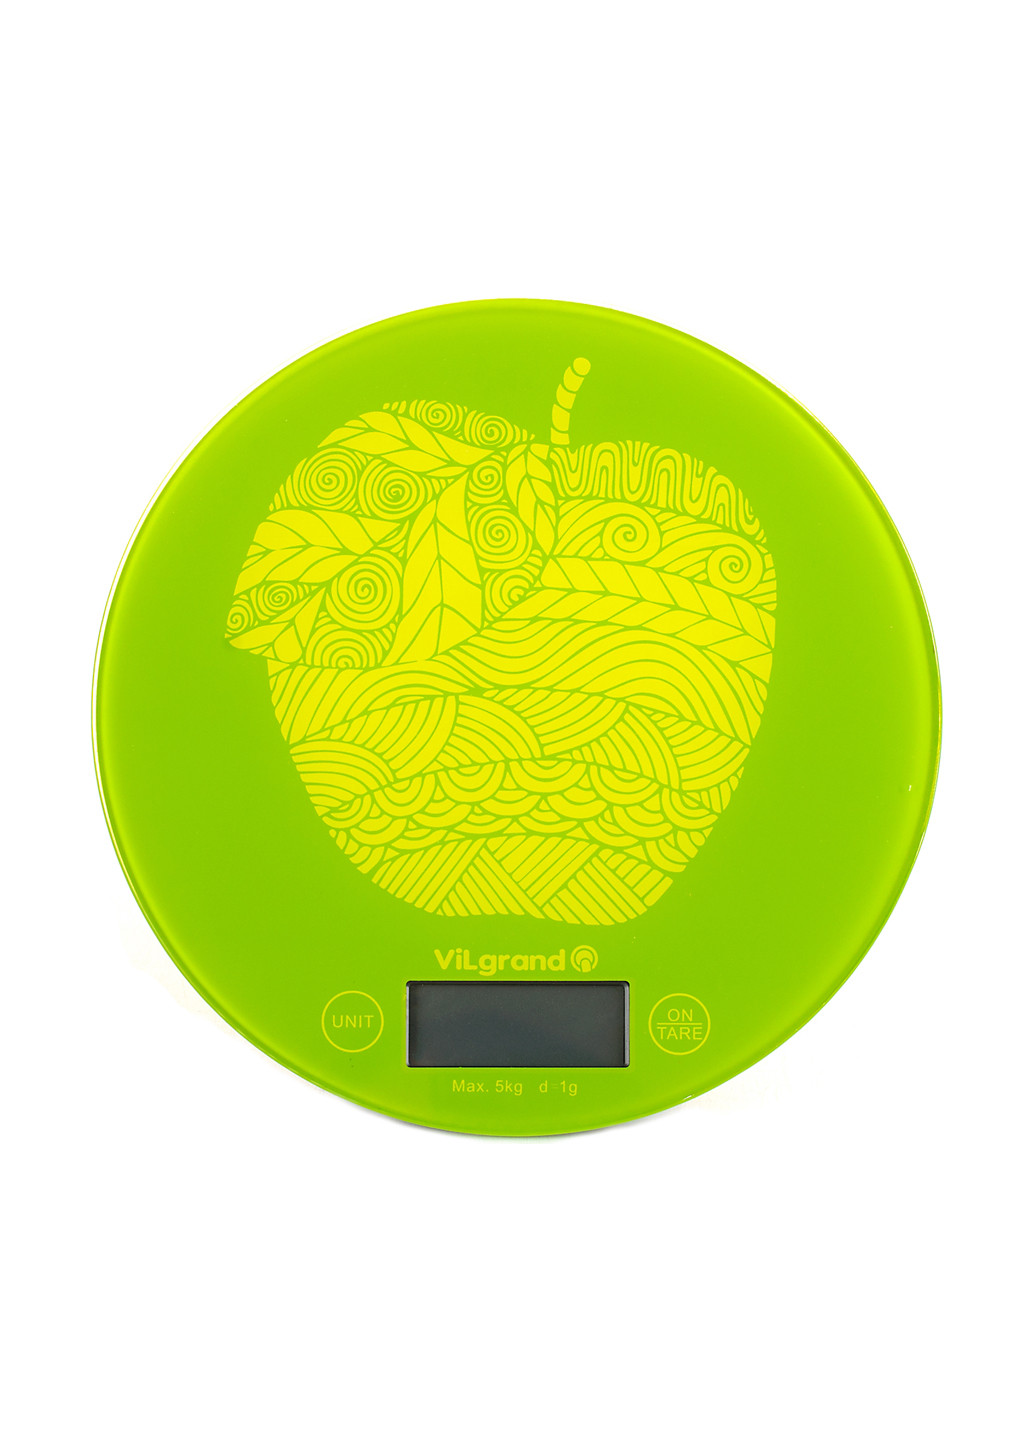 Весы кухонные VKS-519 яблоко Vilgrand vks-519_apple (145235145)